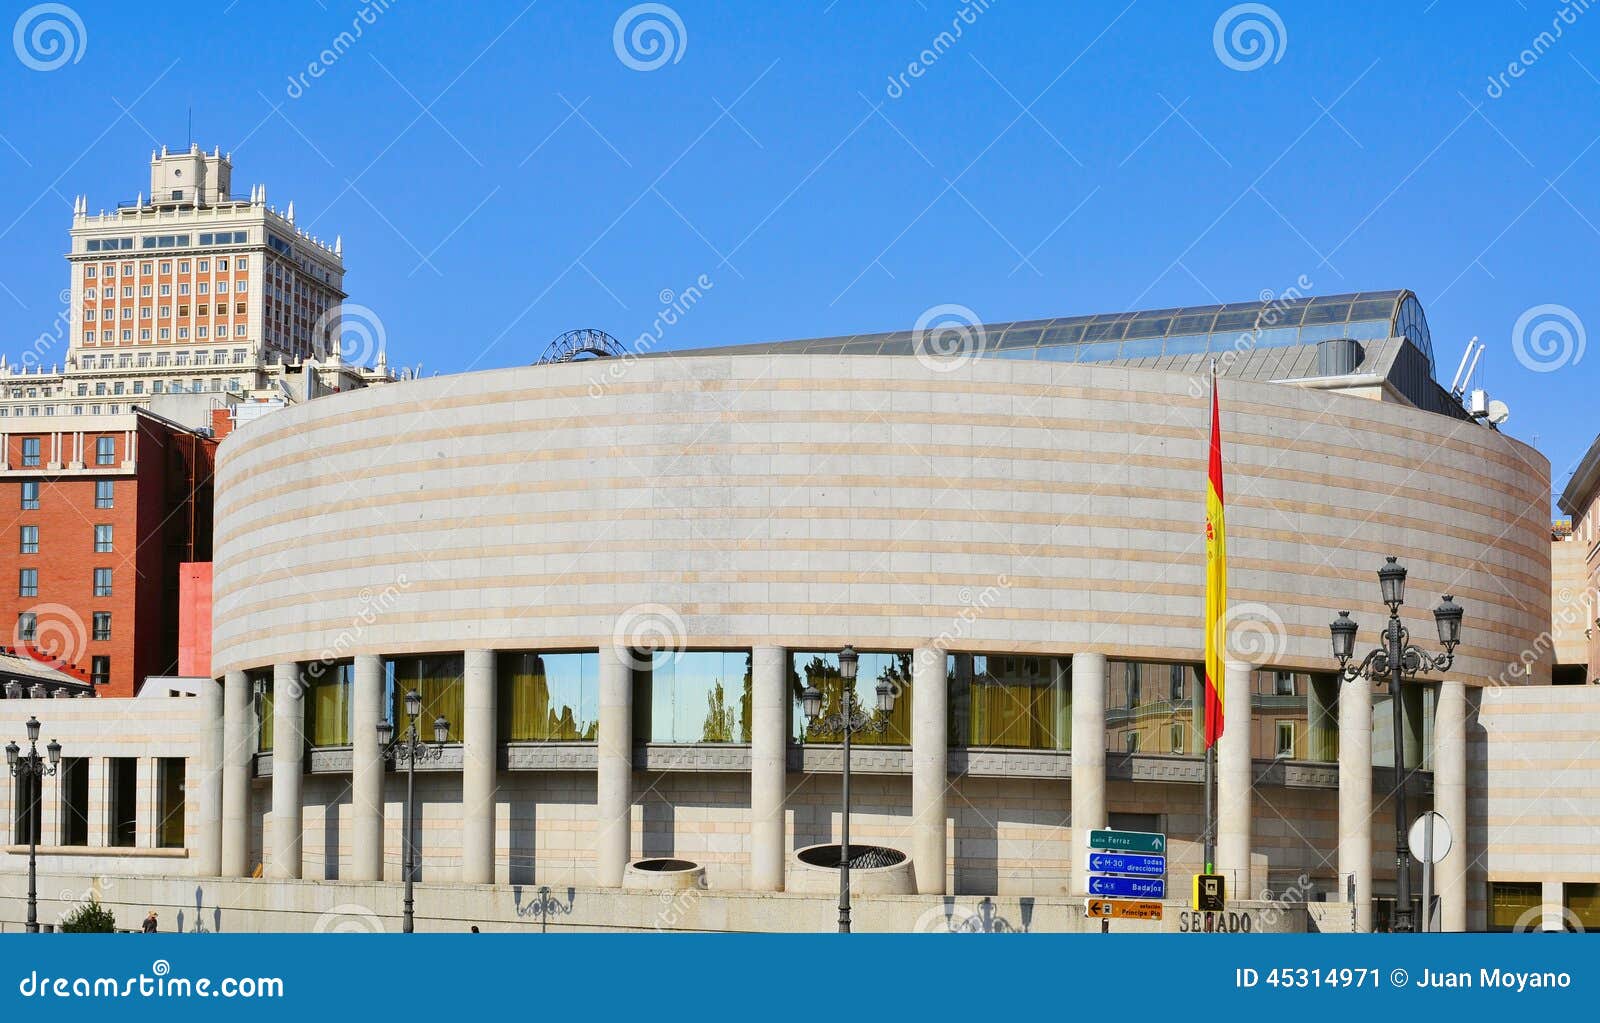 senate of spain palace in madrid, spain